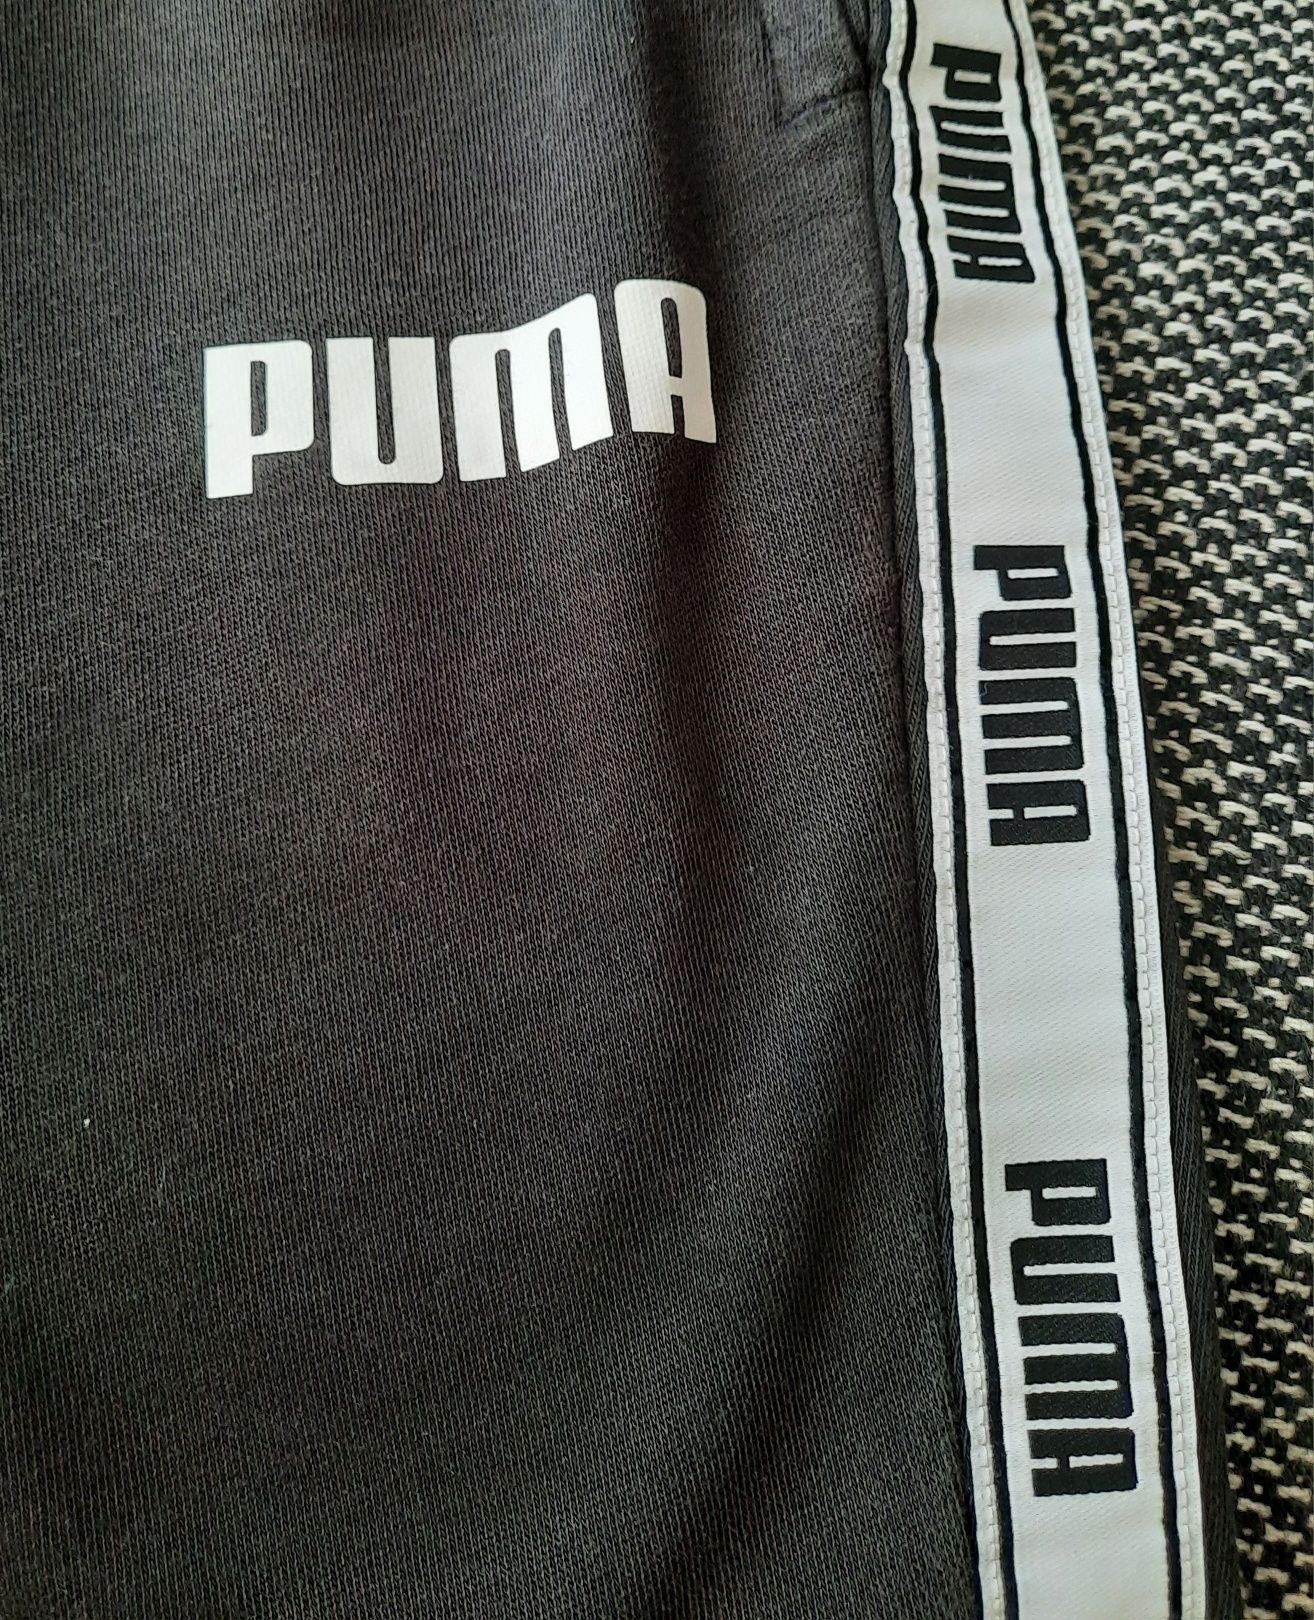 Calções da marca Puma